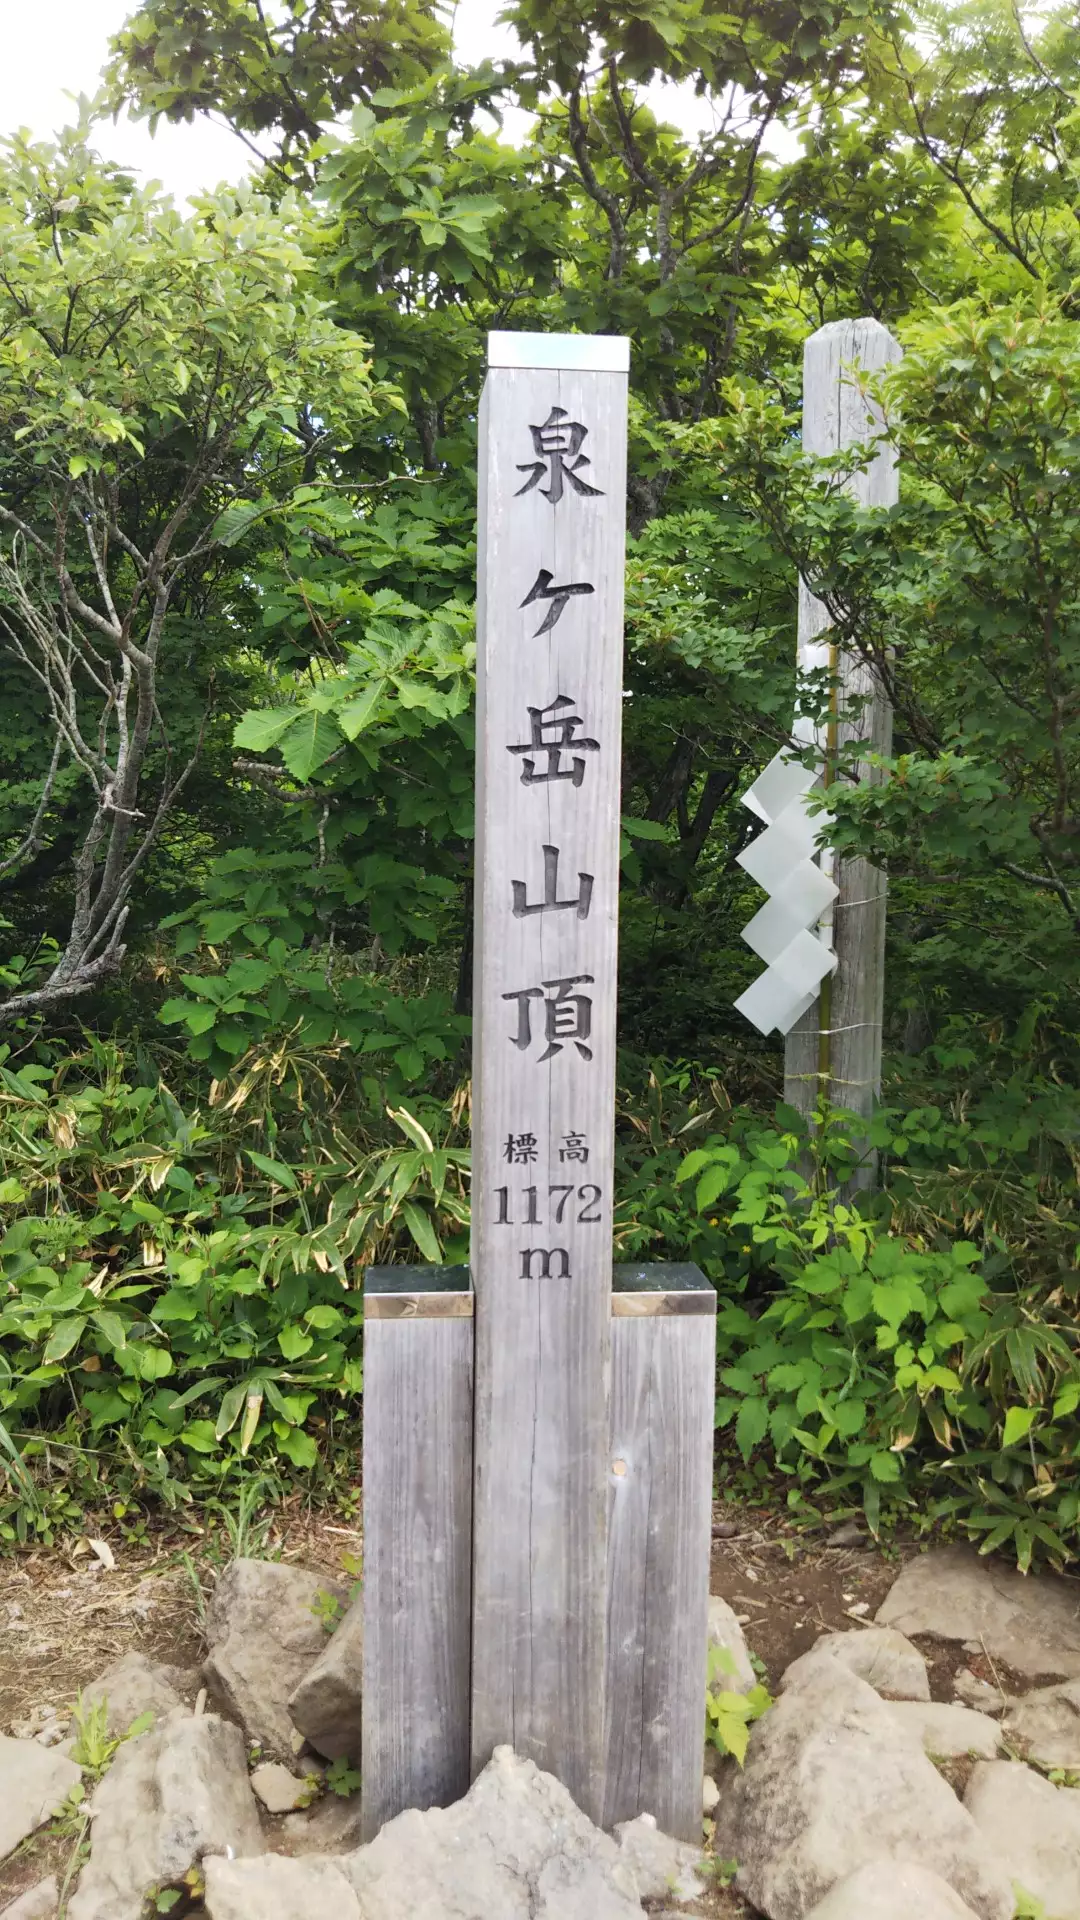 年4月21日 日 泉ヶ岳登山 萬屋さんの七ツ森の活動データ Yamap ヤマップ